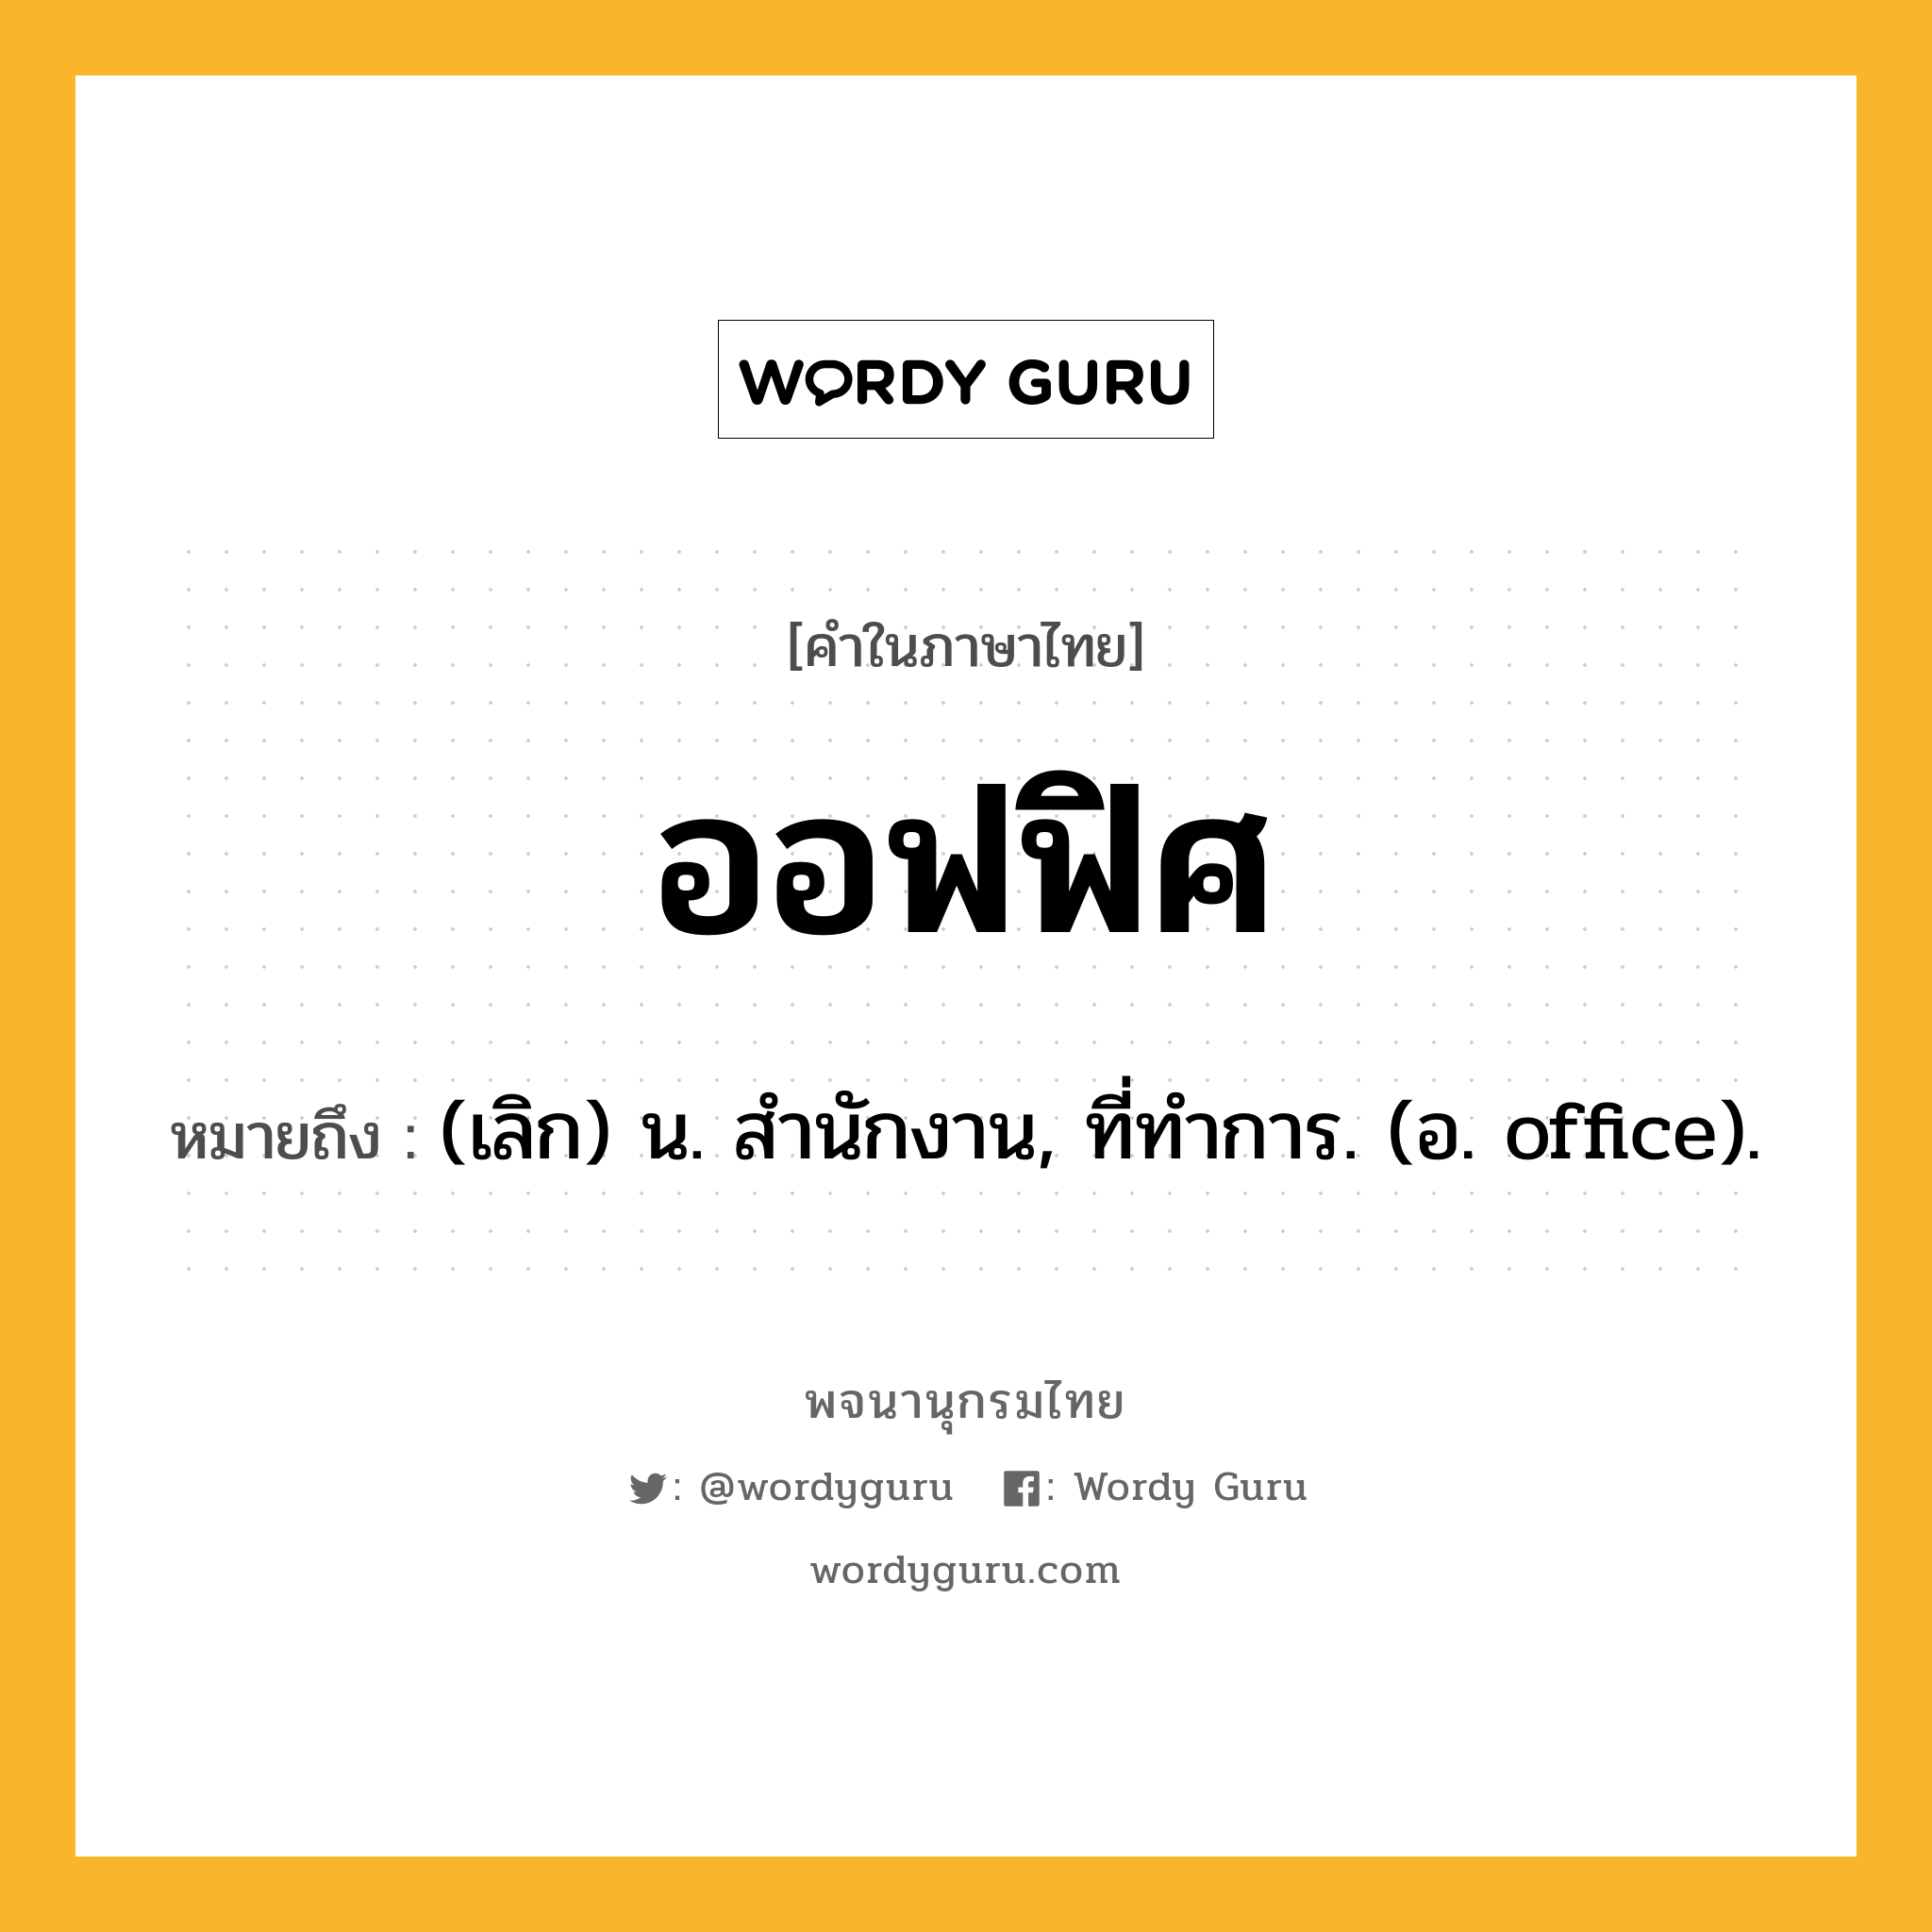 ออฟฟิศ ความหมาย หมายถึงอะไร?, คำในภาษาไทย ออฟฟิศ หมายถึง (เลิก) น. สํานักงาน, ที่ทําการ. (อ. office).